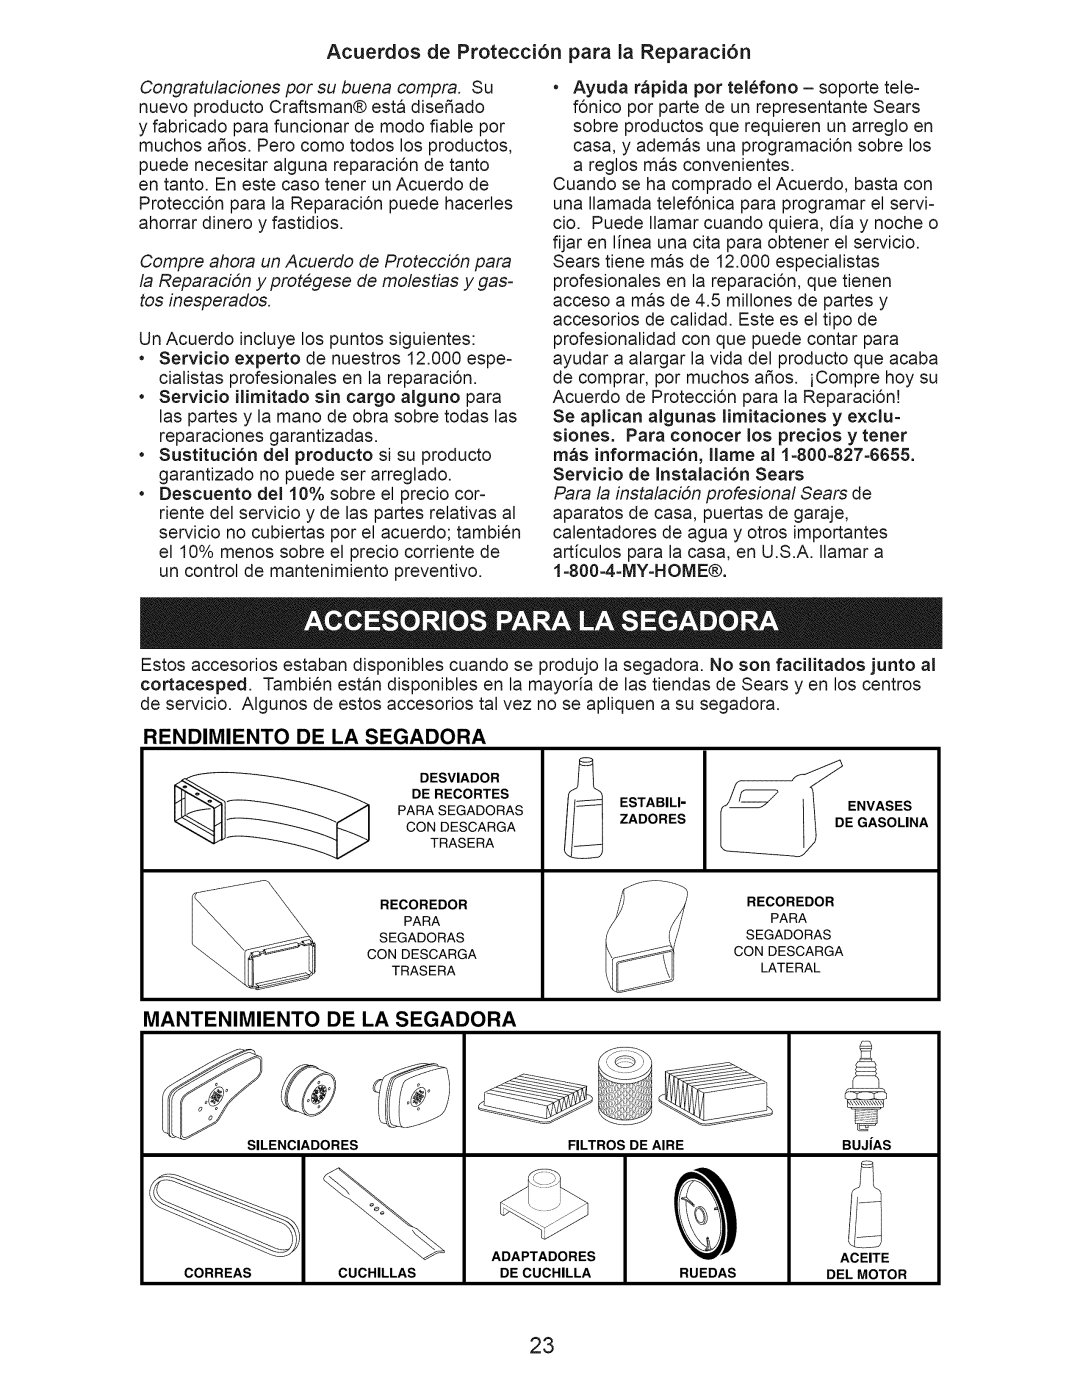 Craftsman 917.376395 manual Acuerdos de Protecci6n para la Reparaci6n, Rendimiento, De La Segadora, Mantenimiento 